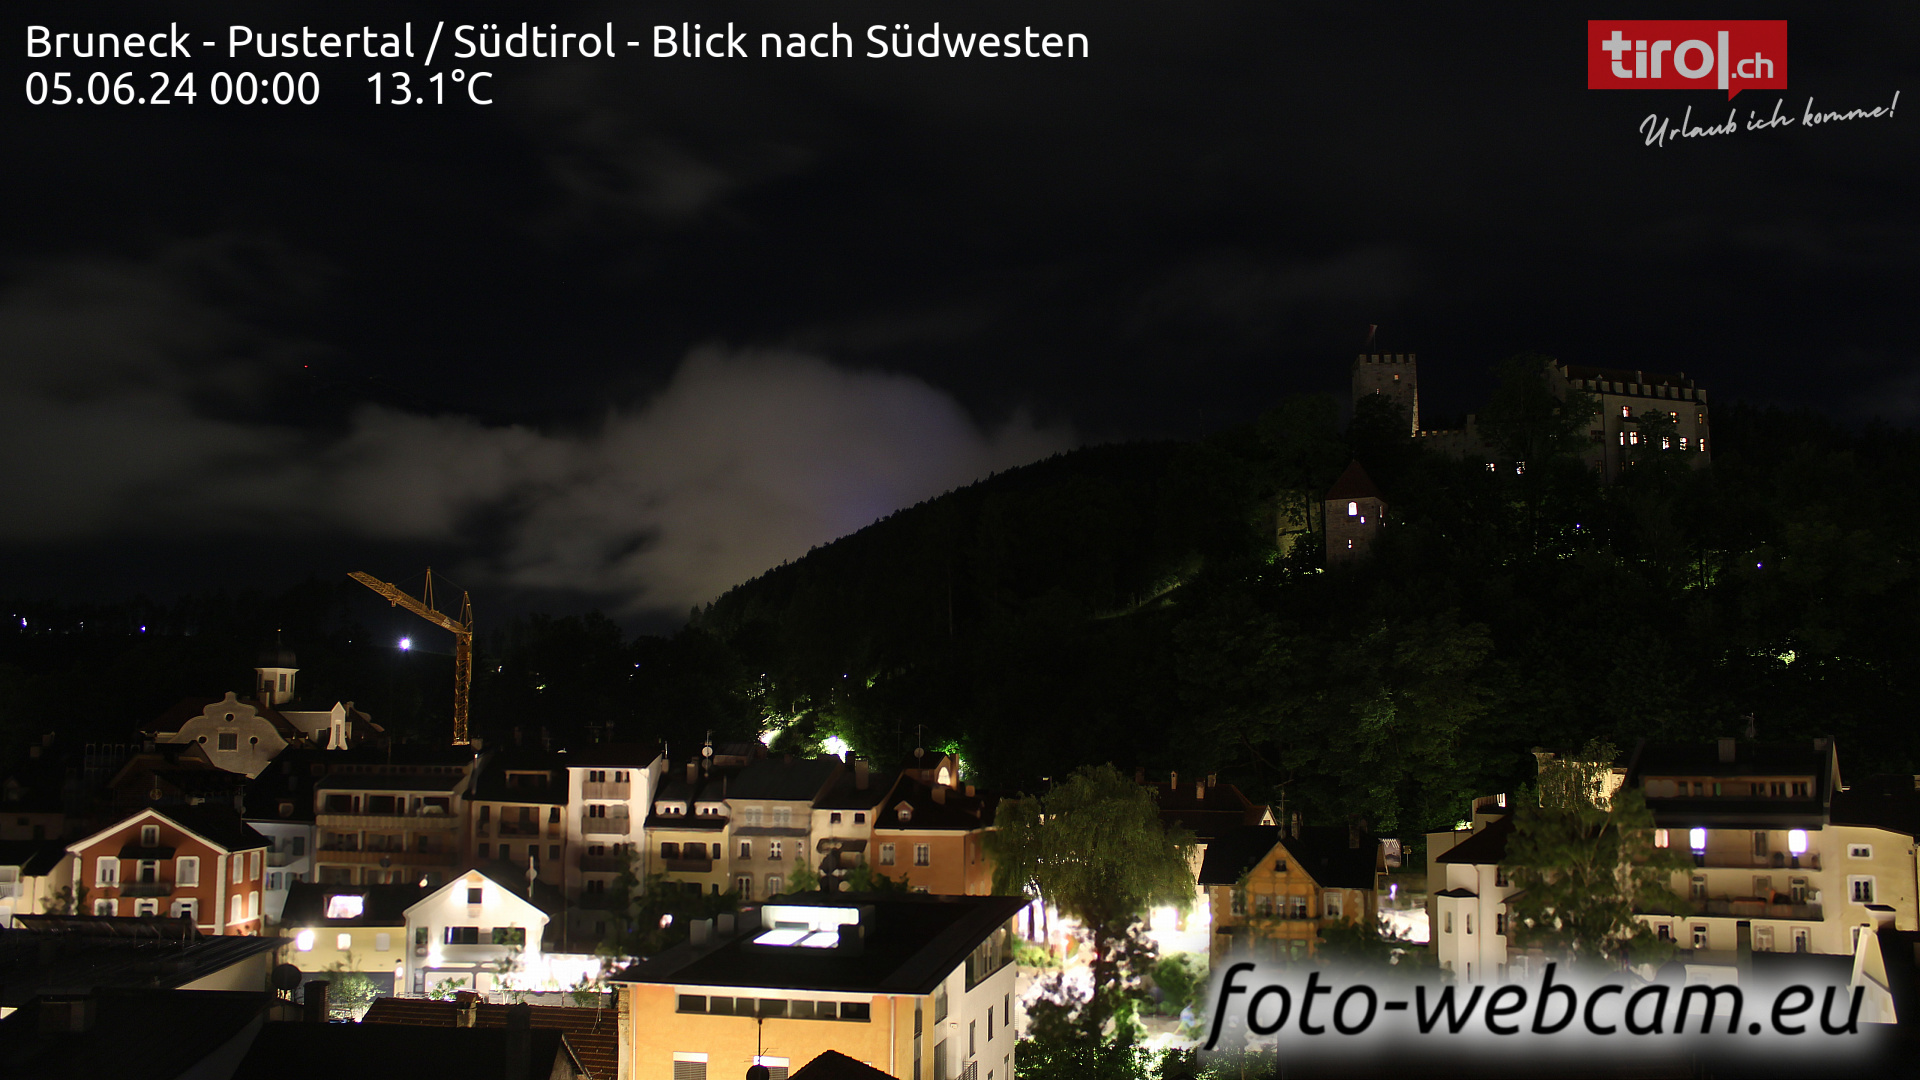 Bruneck Dom. 00:32